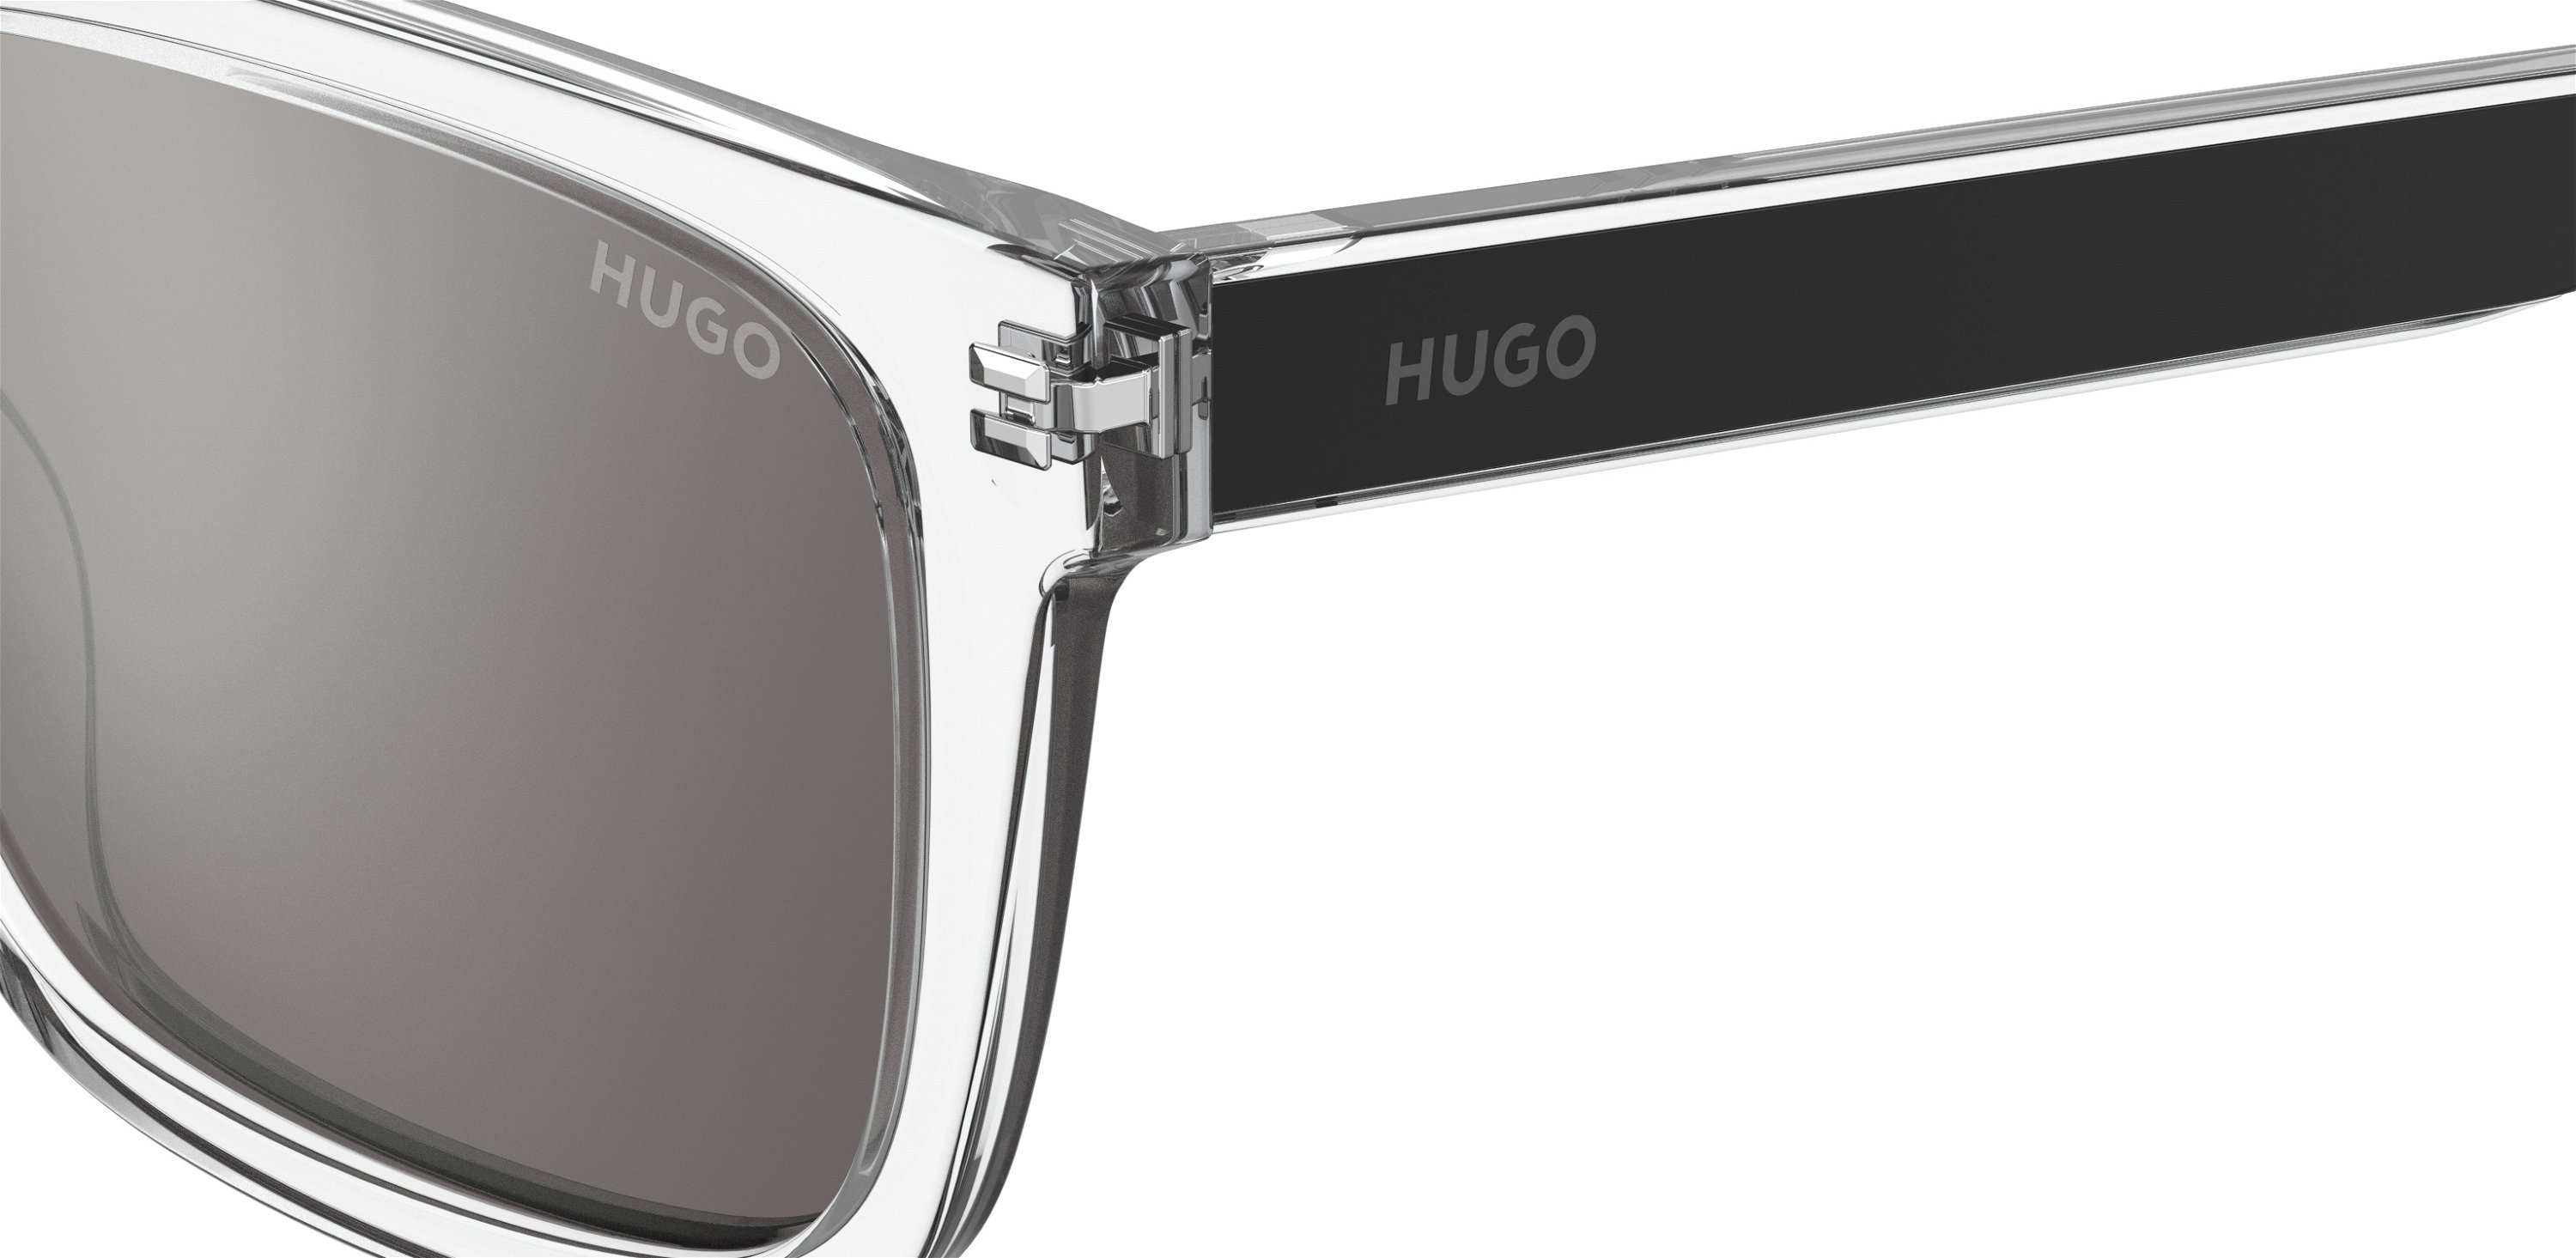 Das Bild zeigt die Sonnenbrille HG1297/S MNG von der Marke Hugo in grau/schwarz.